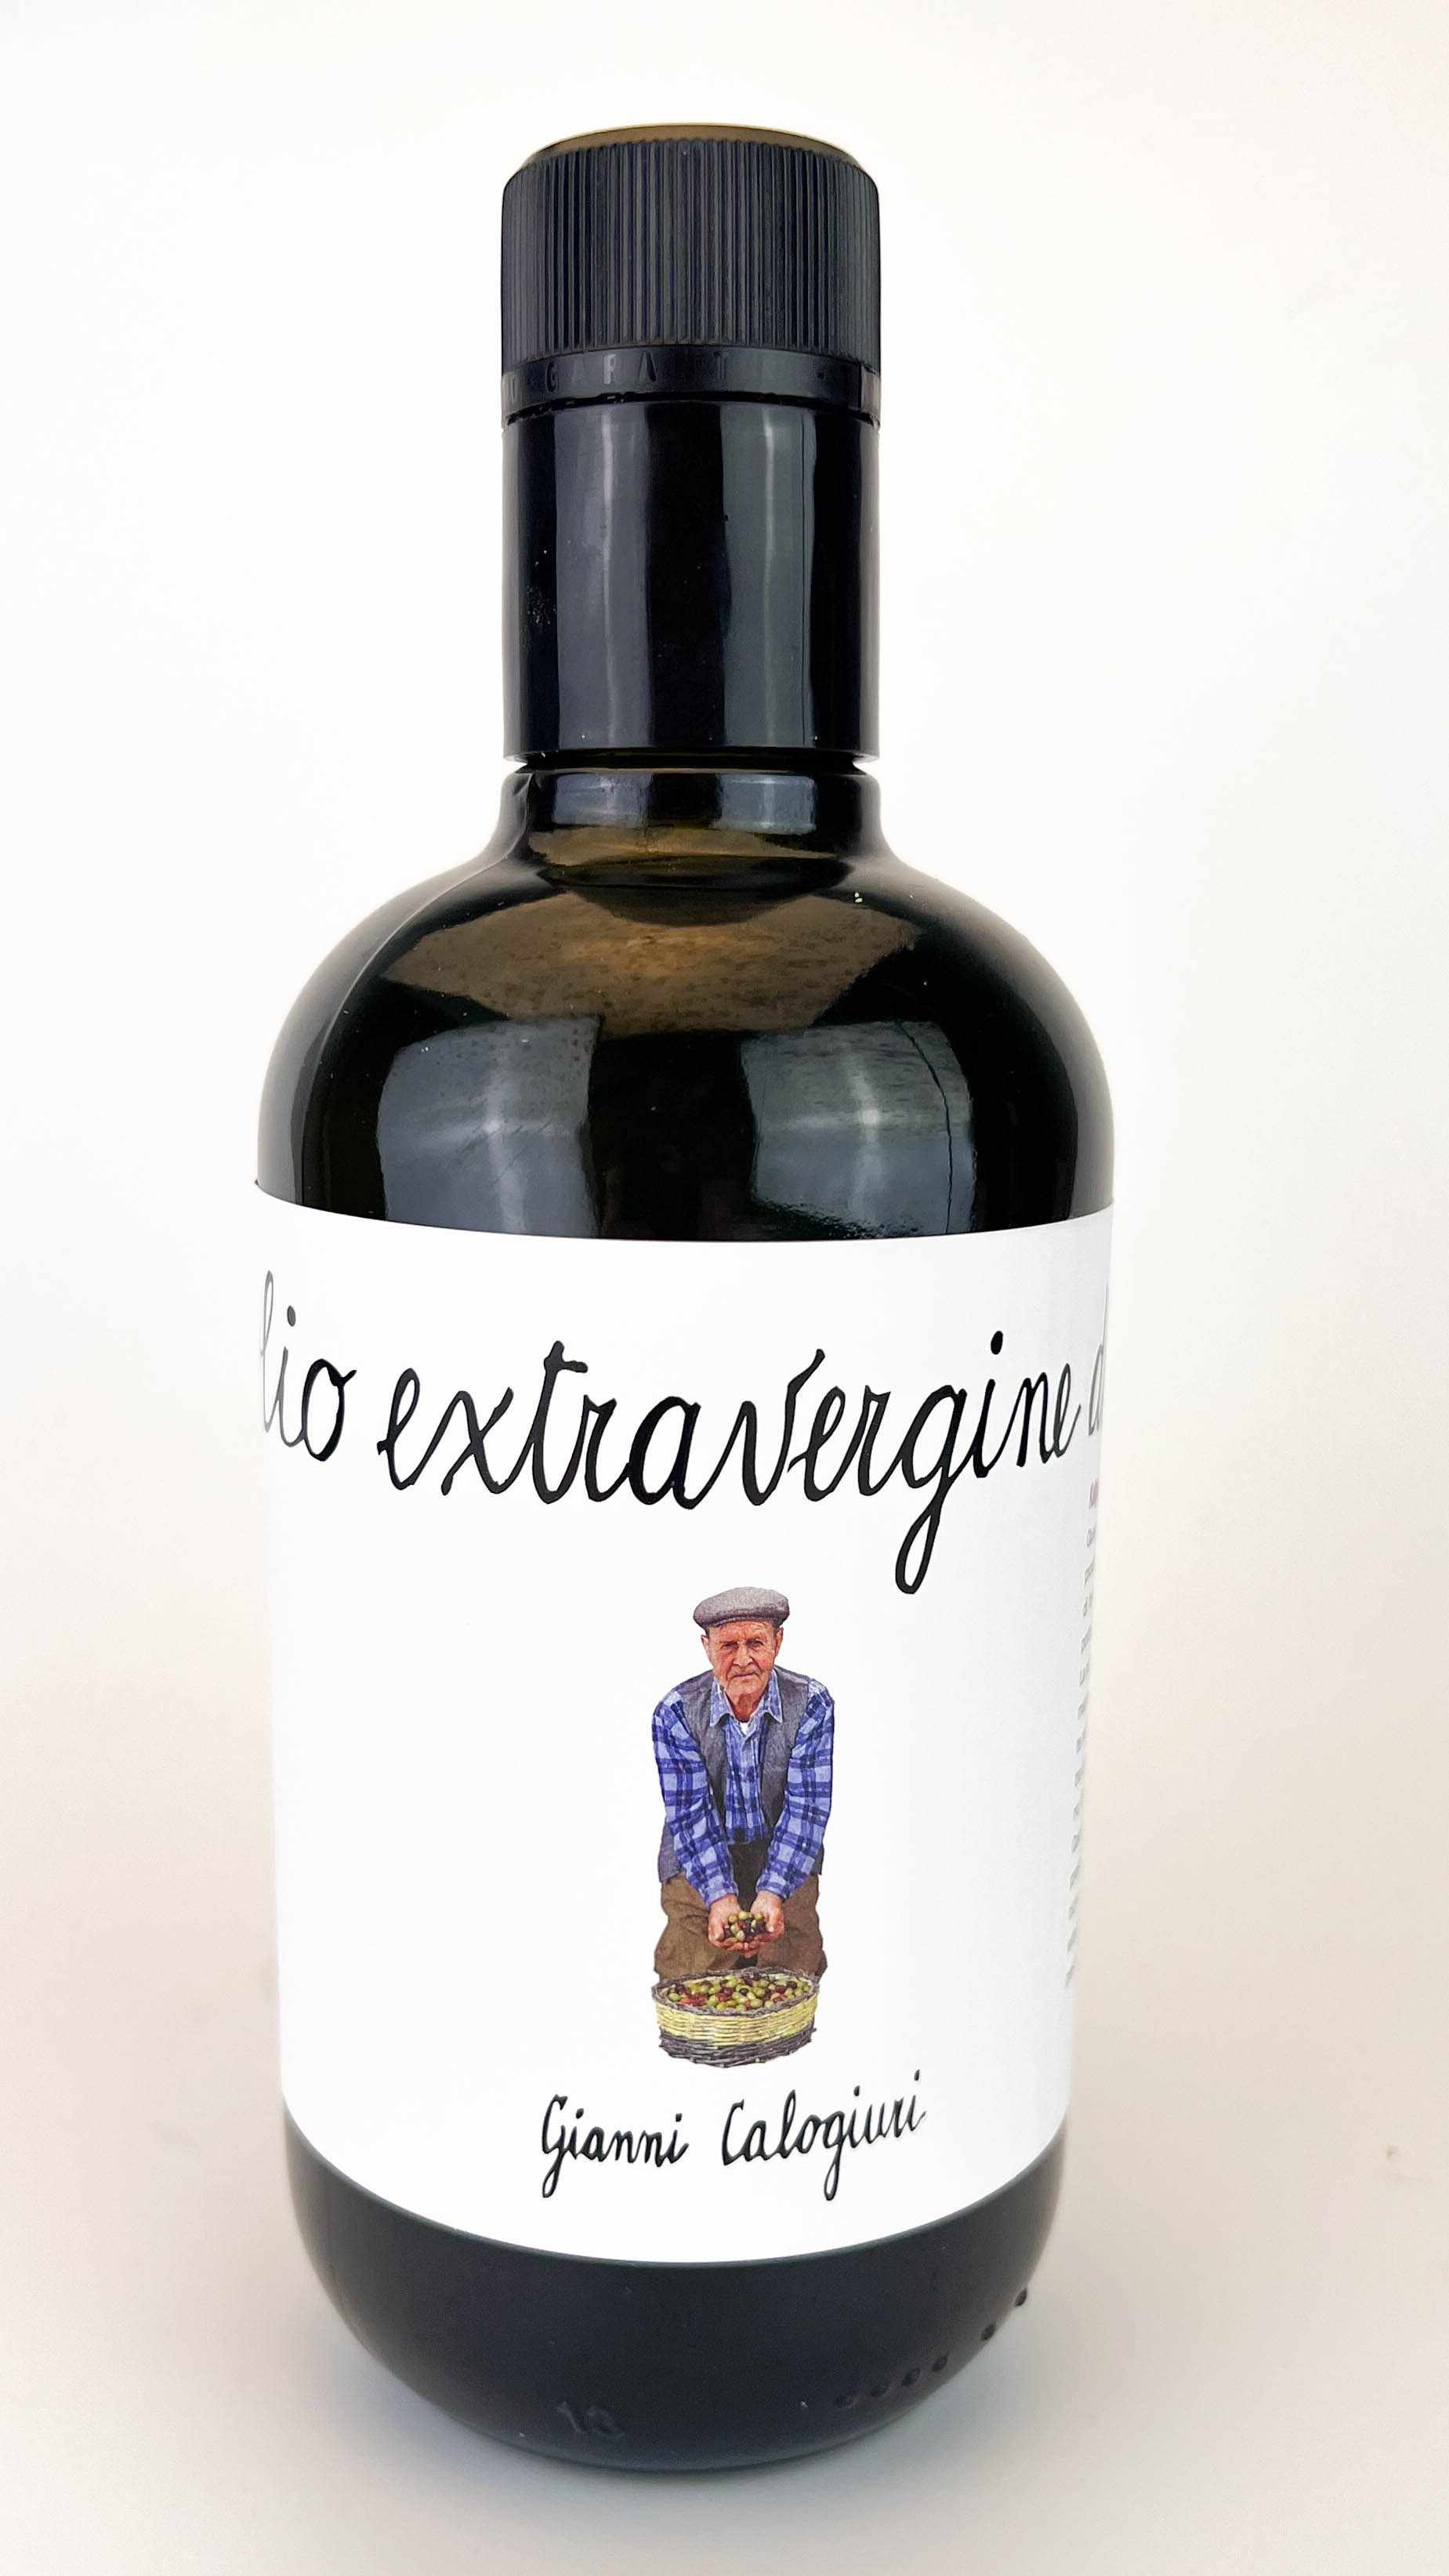 Gianni Calogiuri Olio extra vergine di oliva 500ml